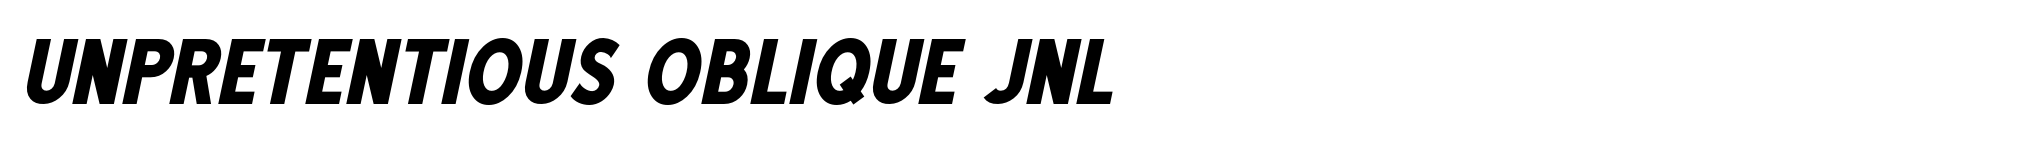 Unpretentious Oblique JNL image